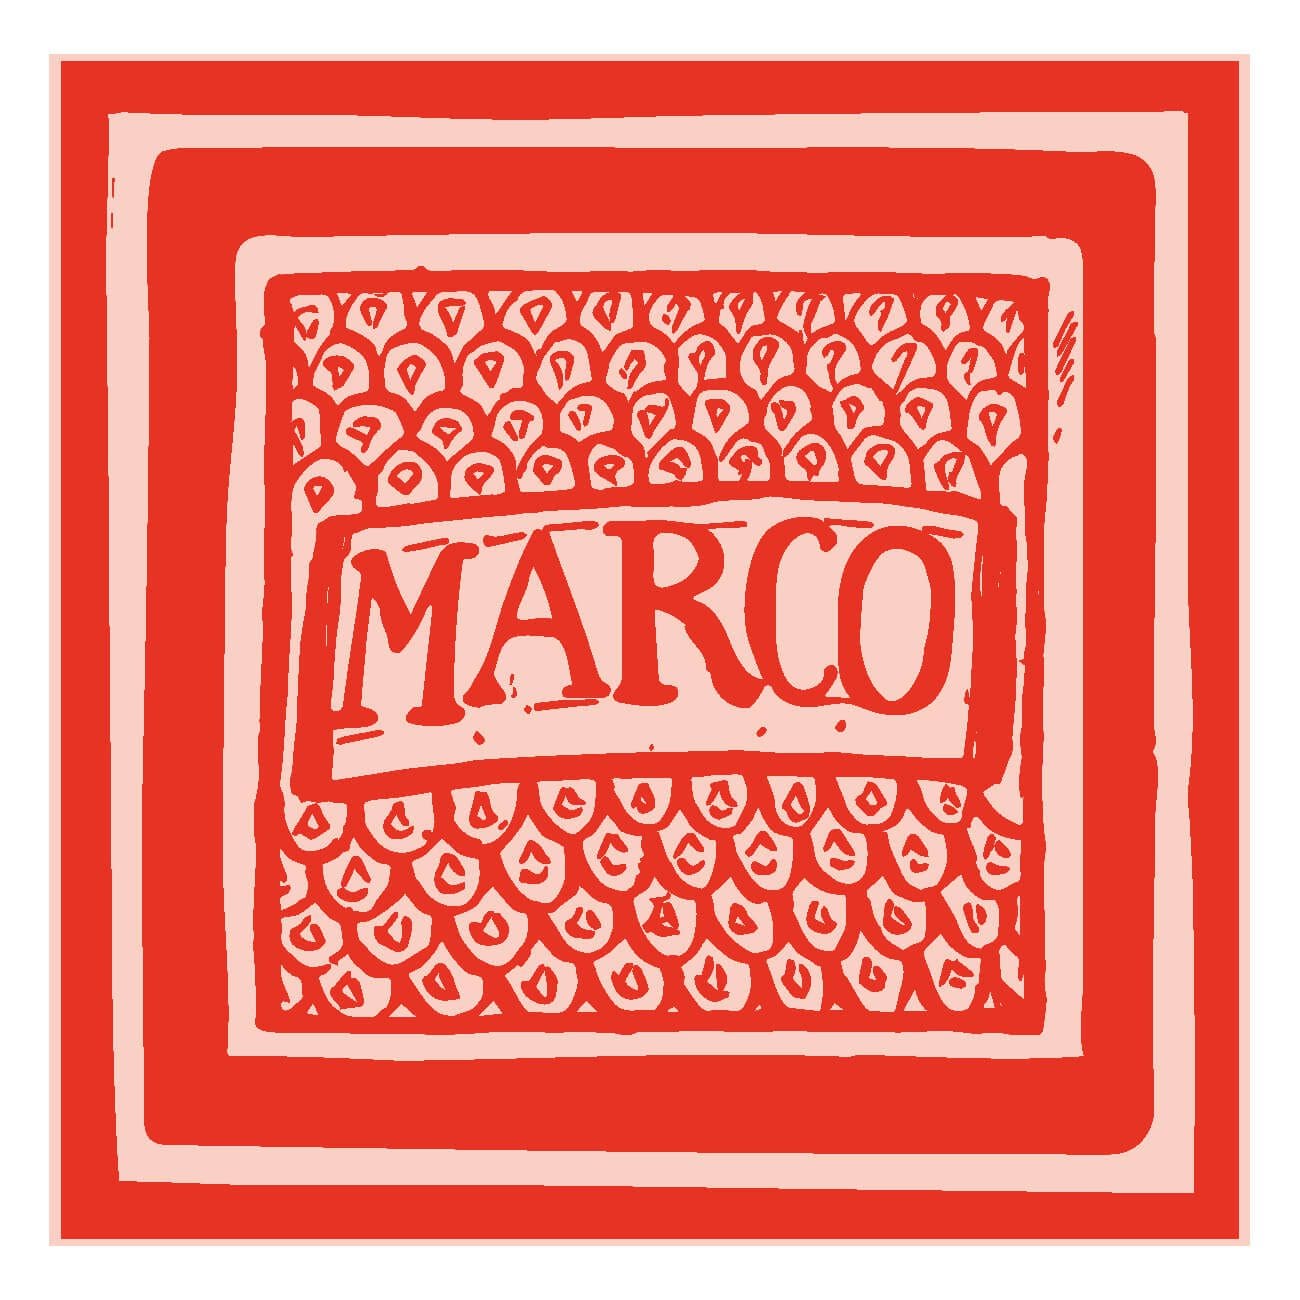 IchetKar dessine le carreau Marco pour le chef italien marcolino